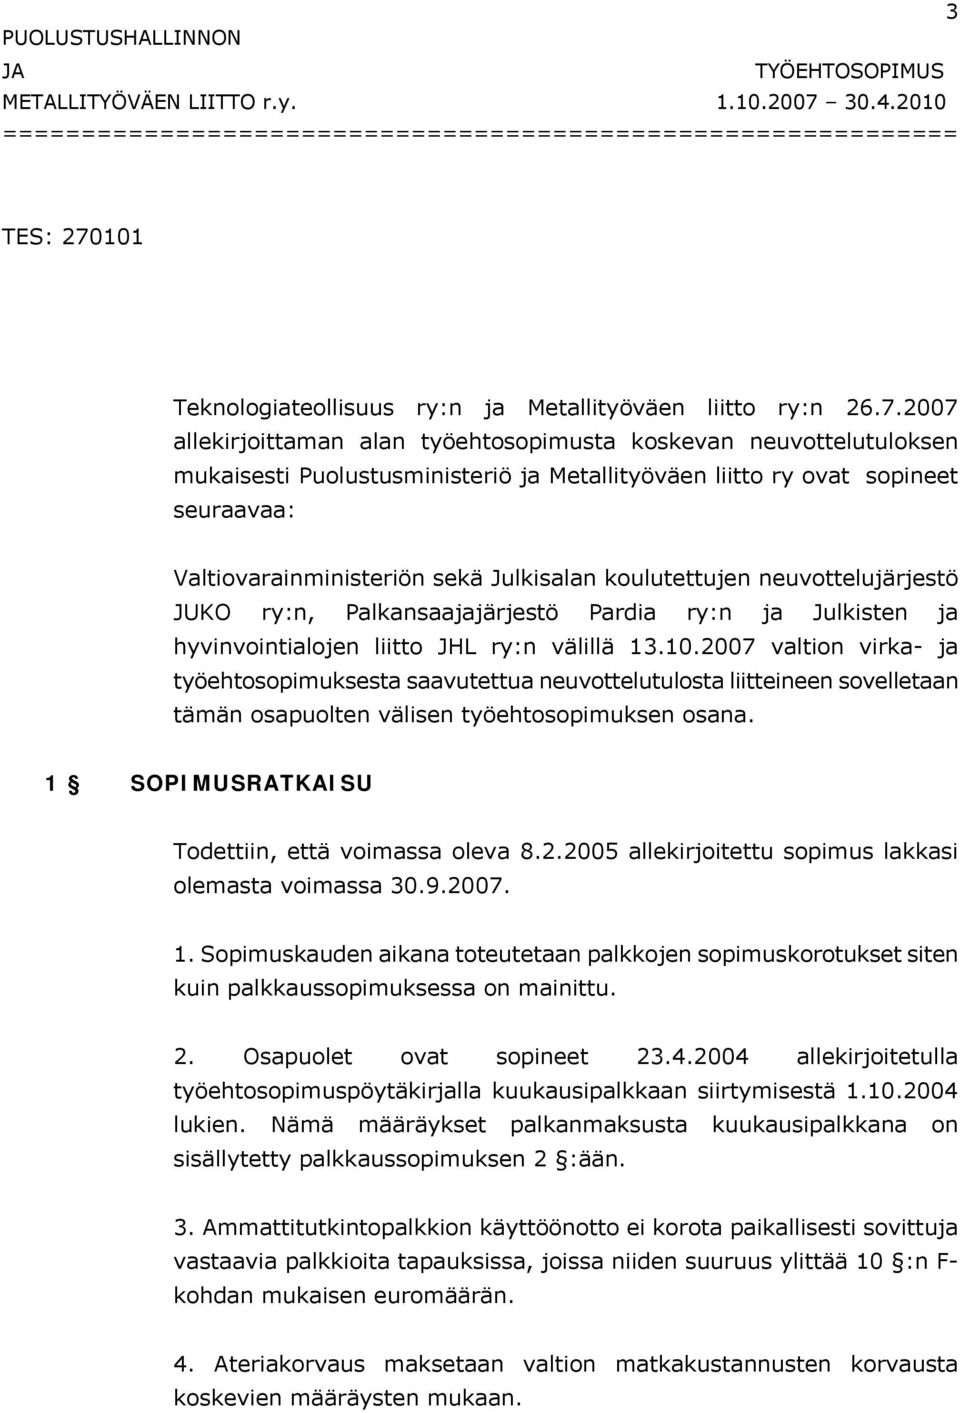 101 Teknologiateollisuus ry:n ja Metallityöväen liitto ry:n 26.7.